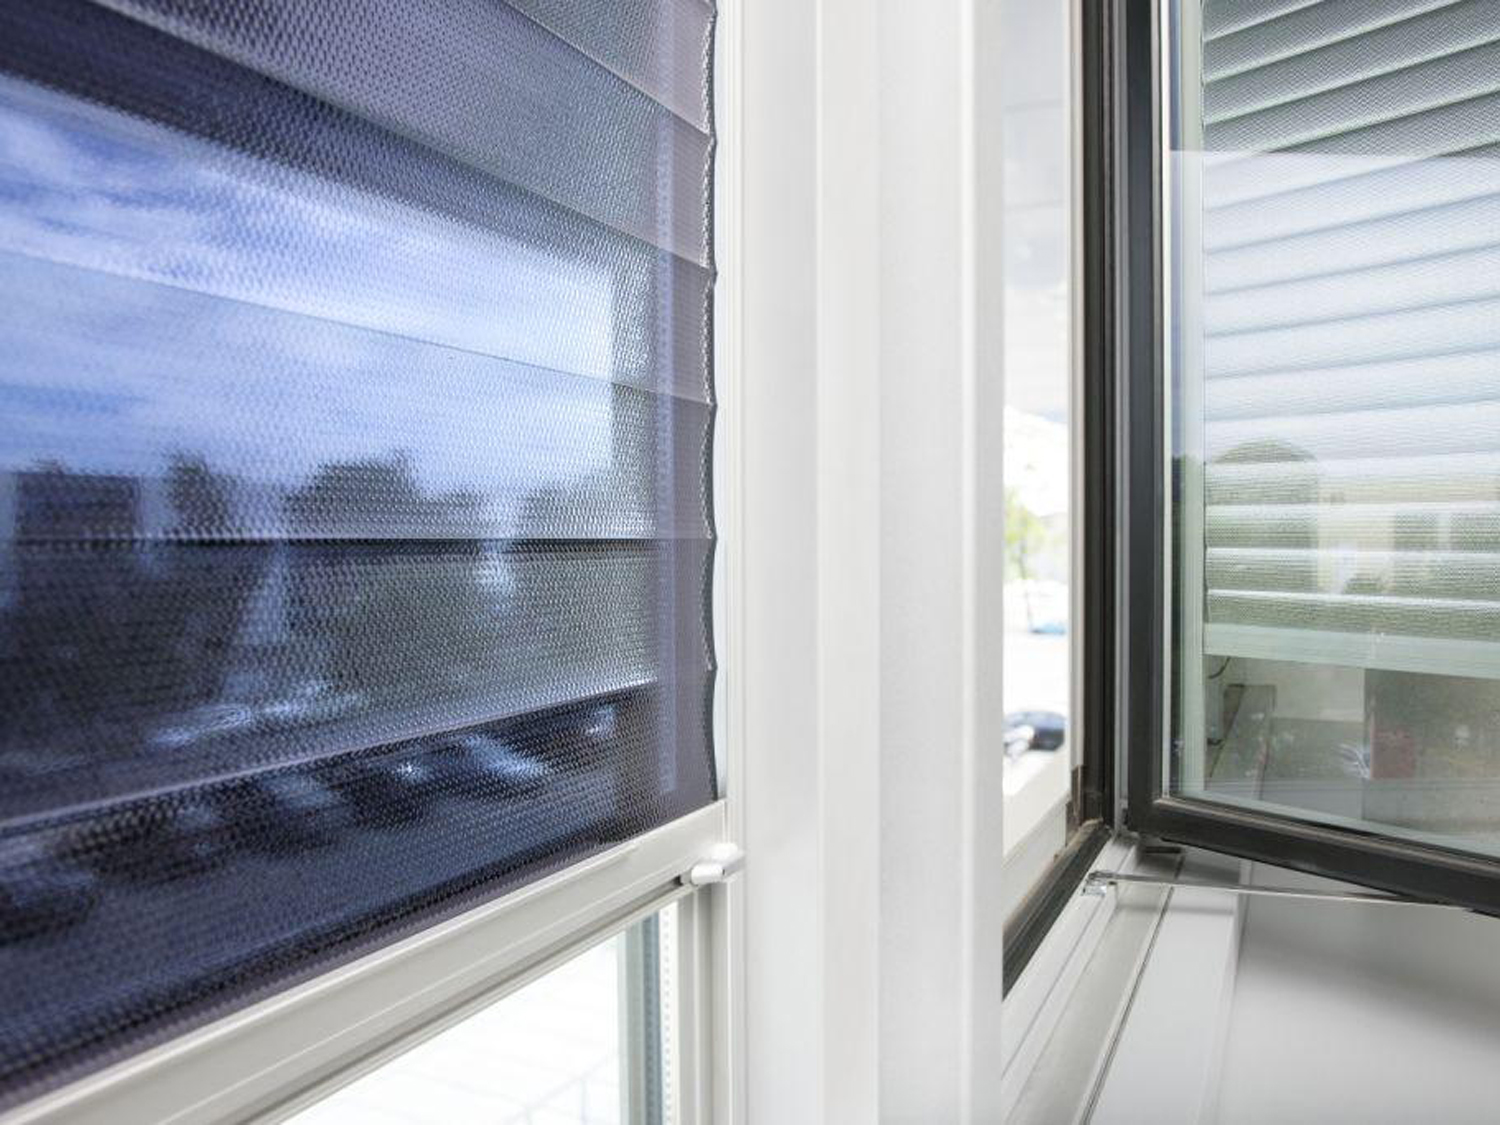 Rollos mit Folie für Fenster in Büros oder für privat schützen gegen Hitze und Blendung